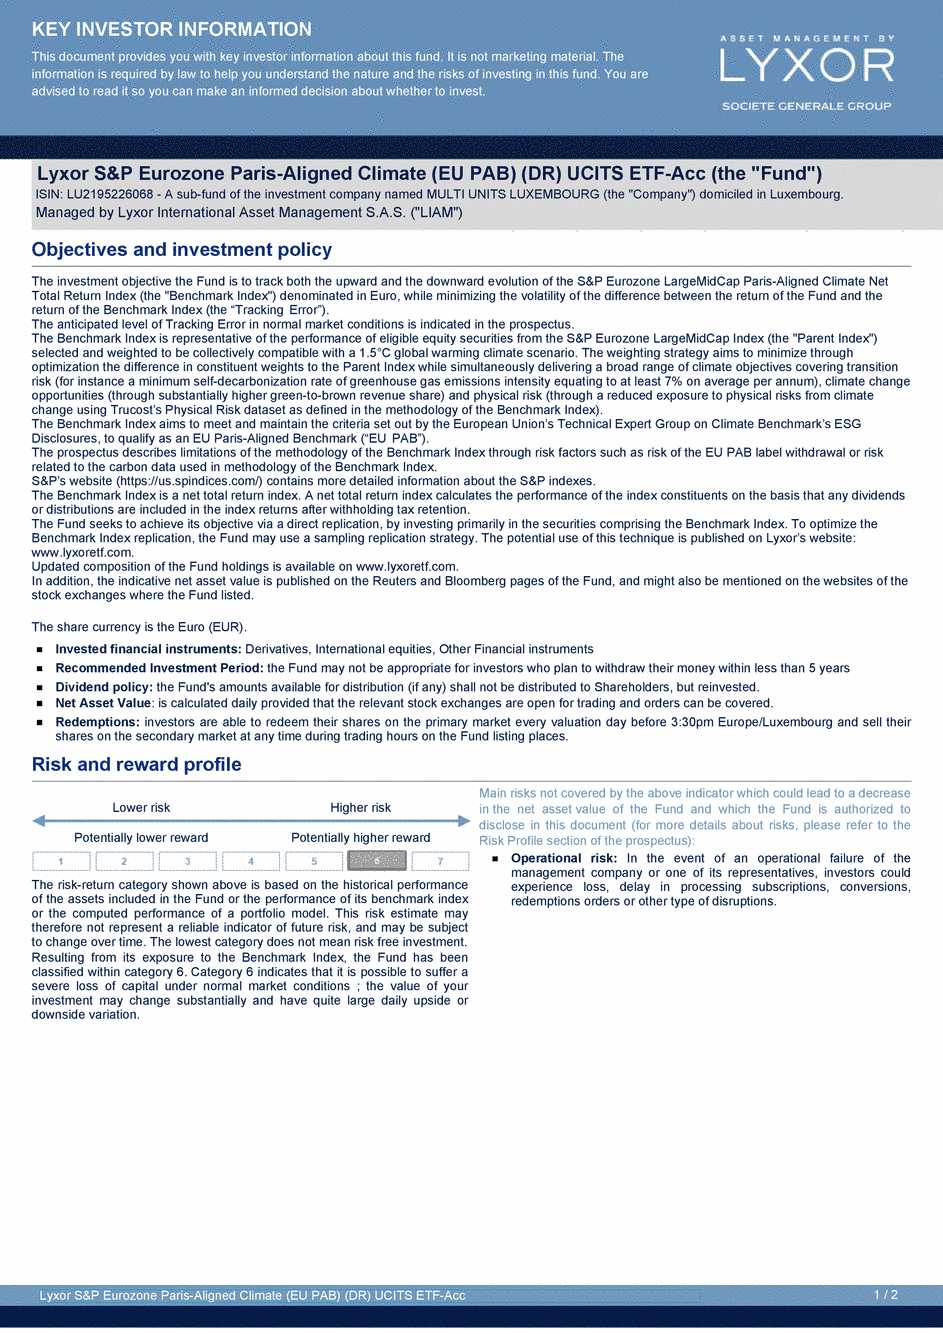 DICI Lyxor S&P Eurozone Paris-Aligned Climate (EU PAB) (DR) UCITS ETF - Acc - 22/06/2020 - Anglais